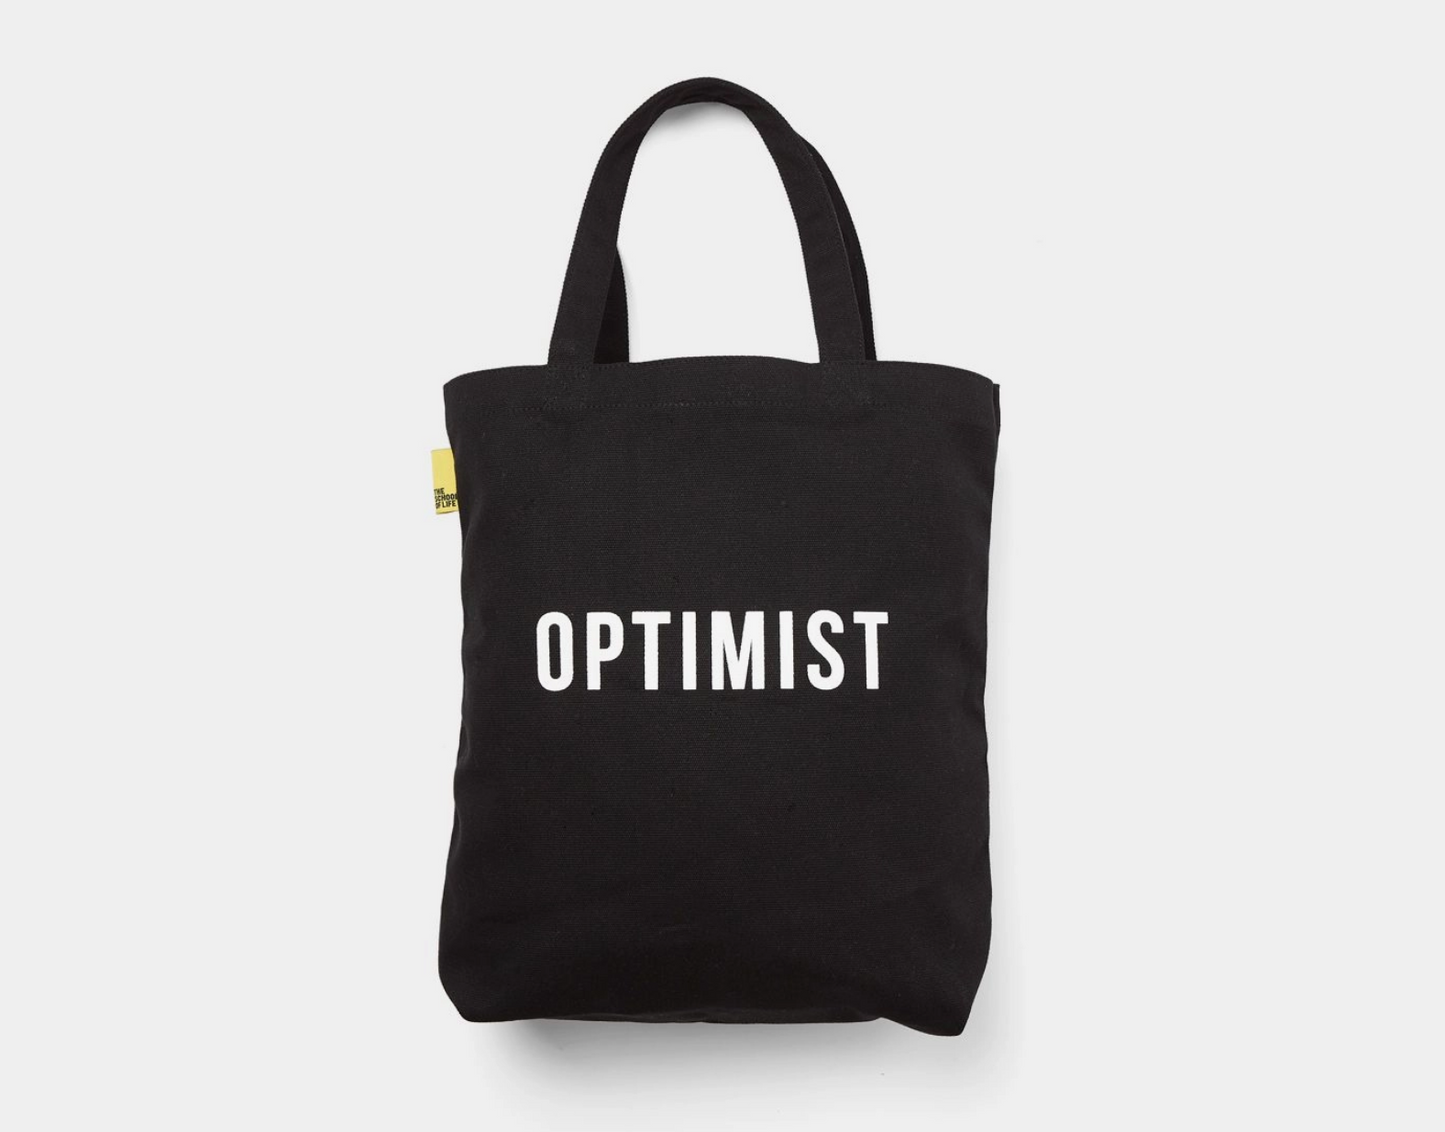 Optimist and Pessimist Tote Bag